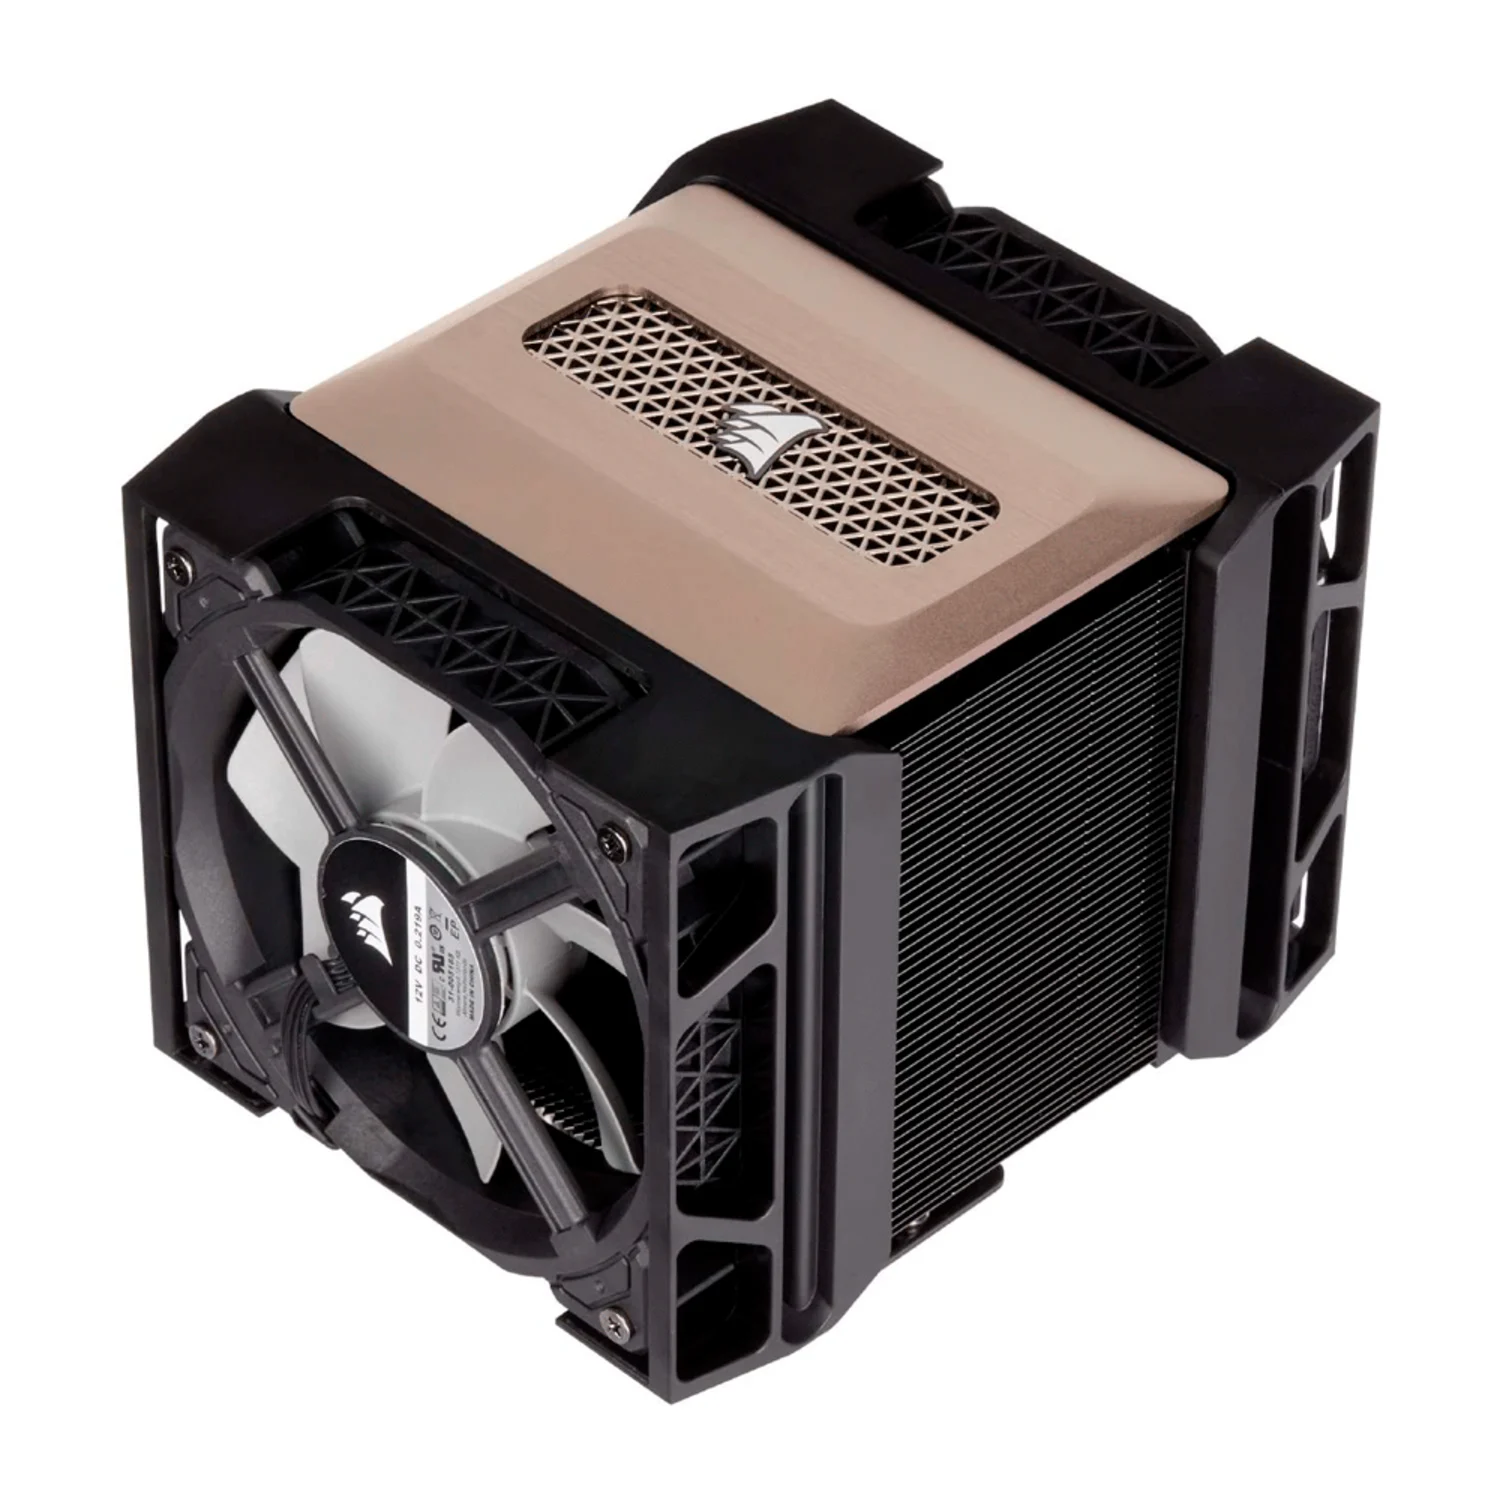 Cooler para Processador Corsair A500 / Dual Fan - (CT-9010003-WW)